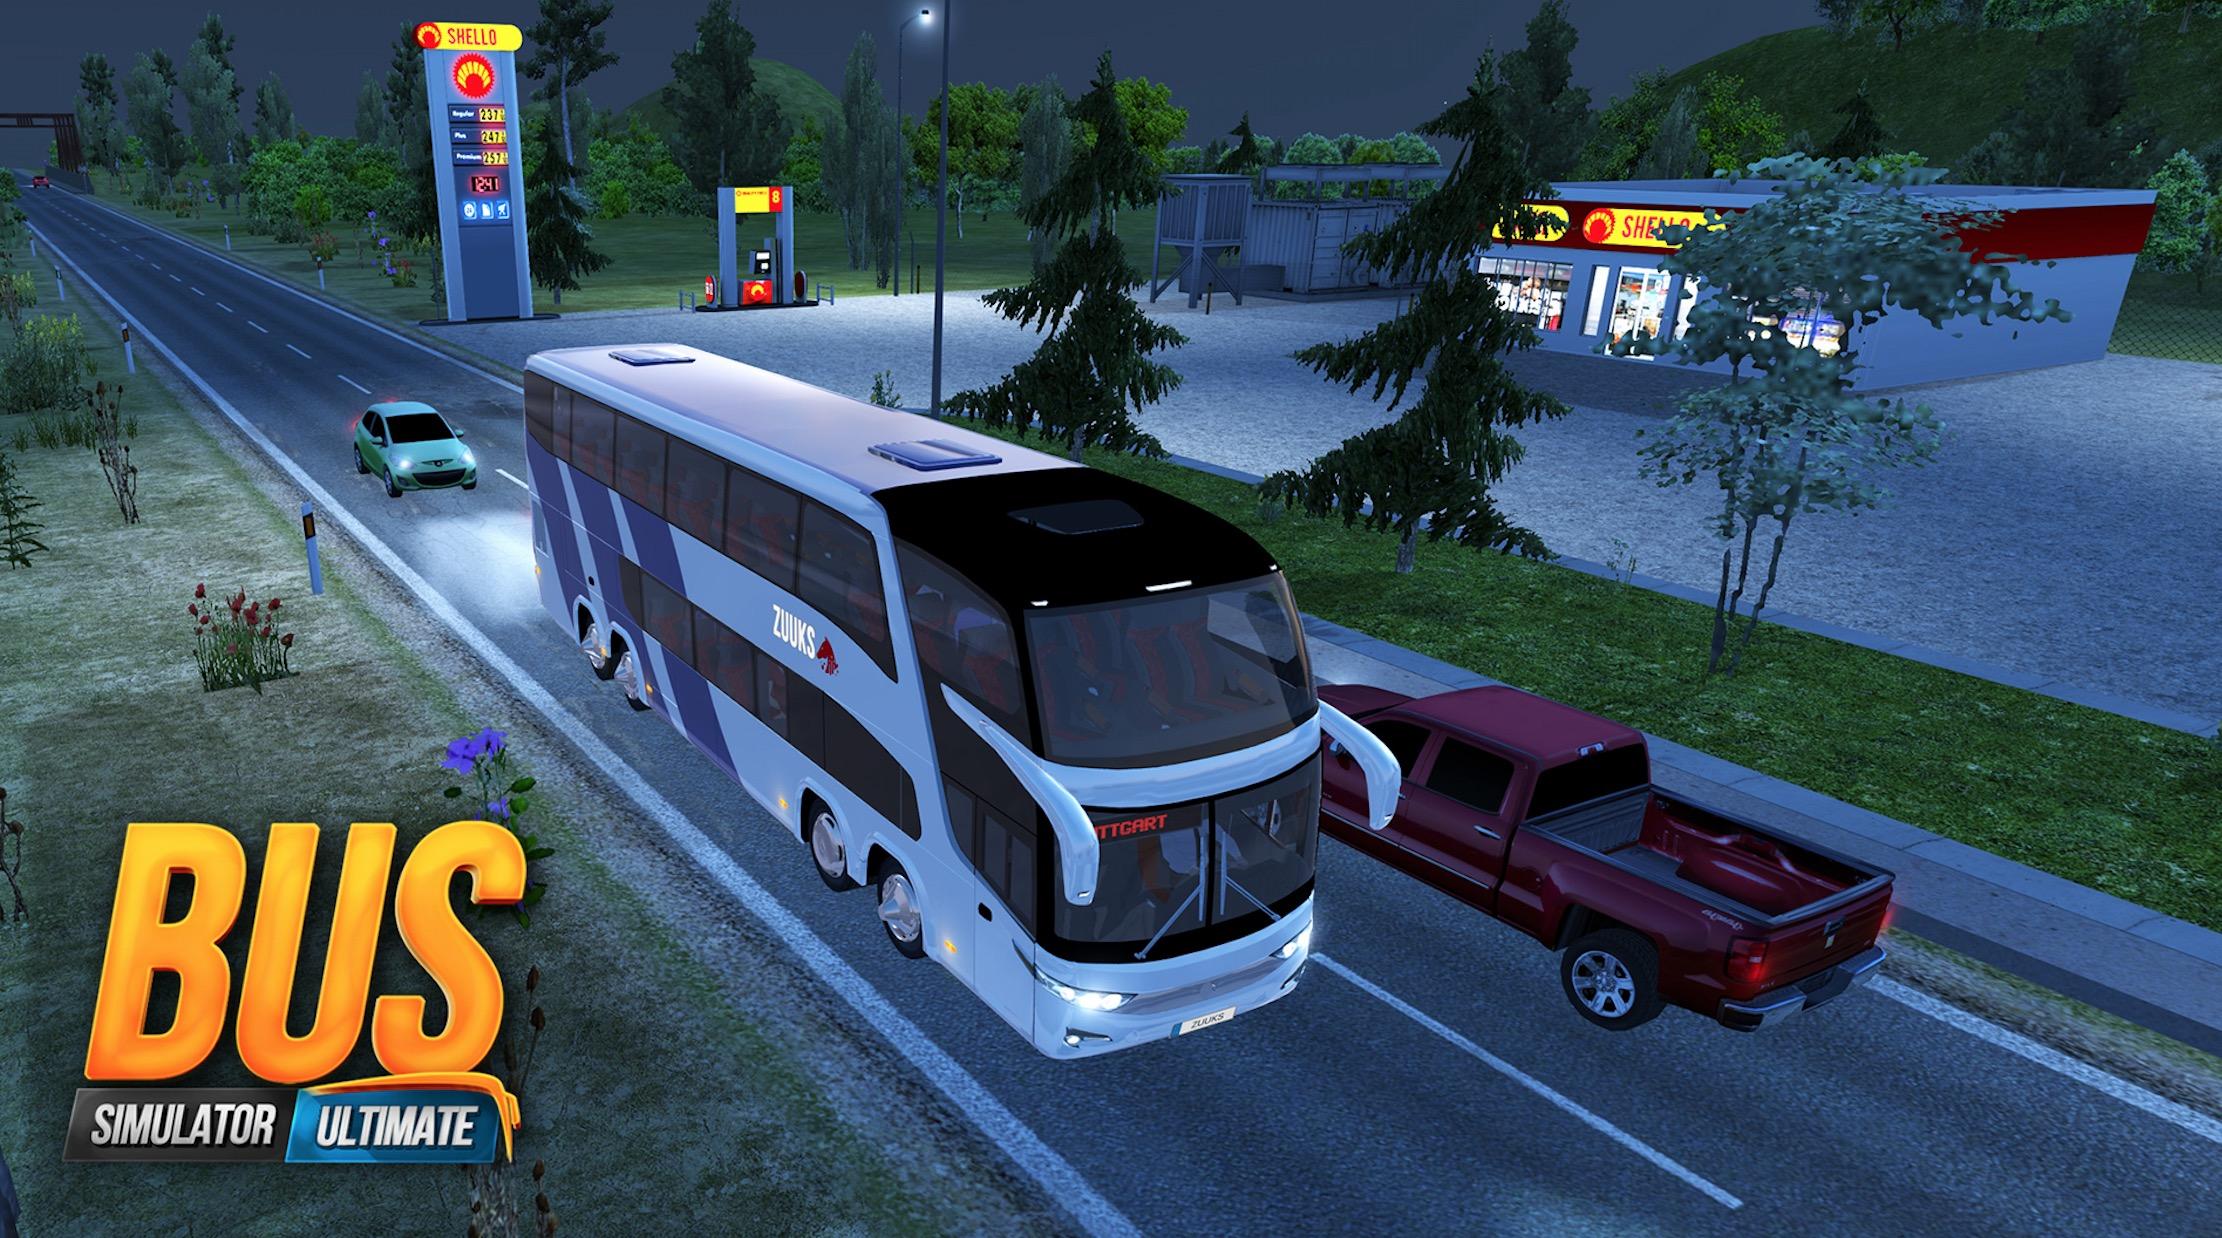 Видео игры на автобусе. Симулятор автобуса Ultimate. Игра автобус ультимейт. Бус симулятор ультимейт. Bus Simulator Ultimate автобусы.